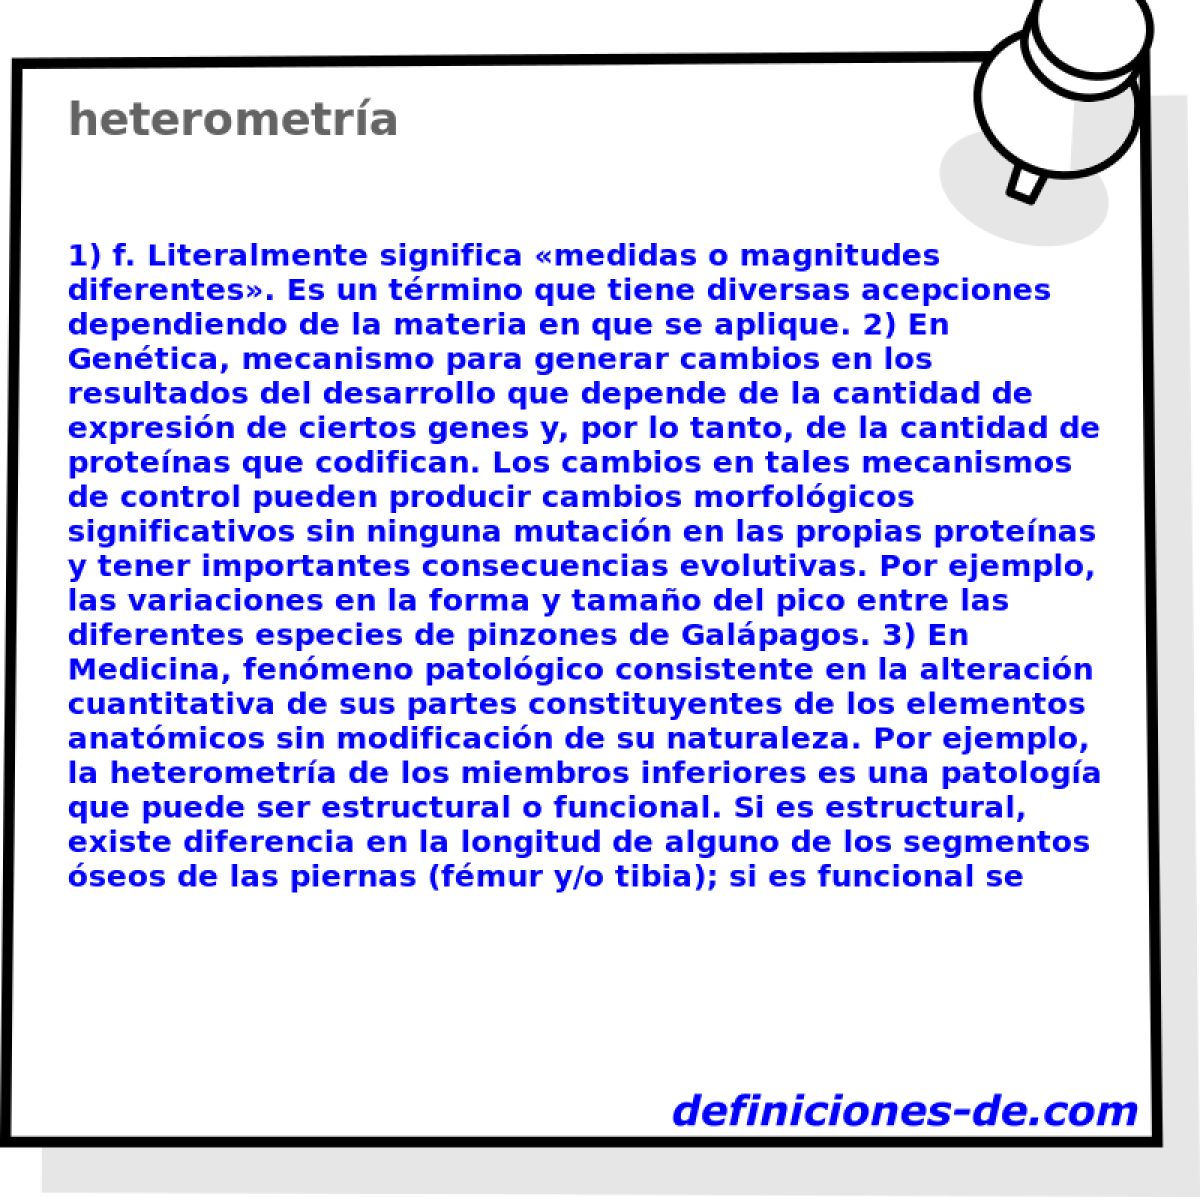 heterometra 